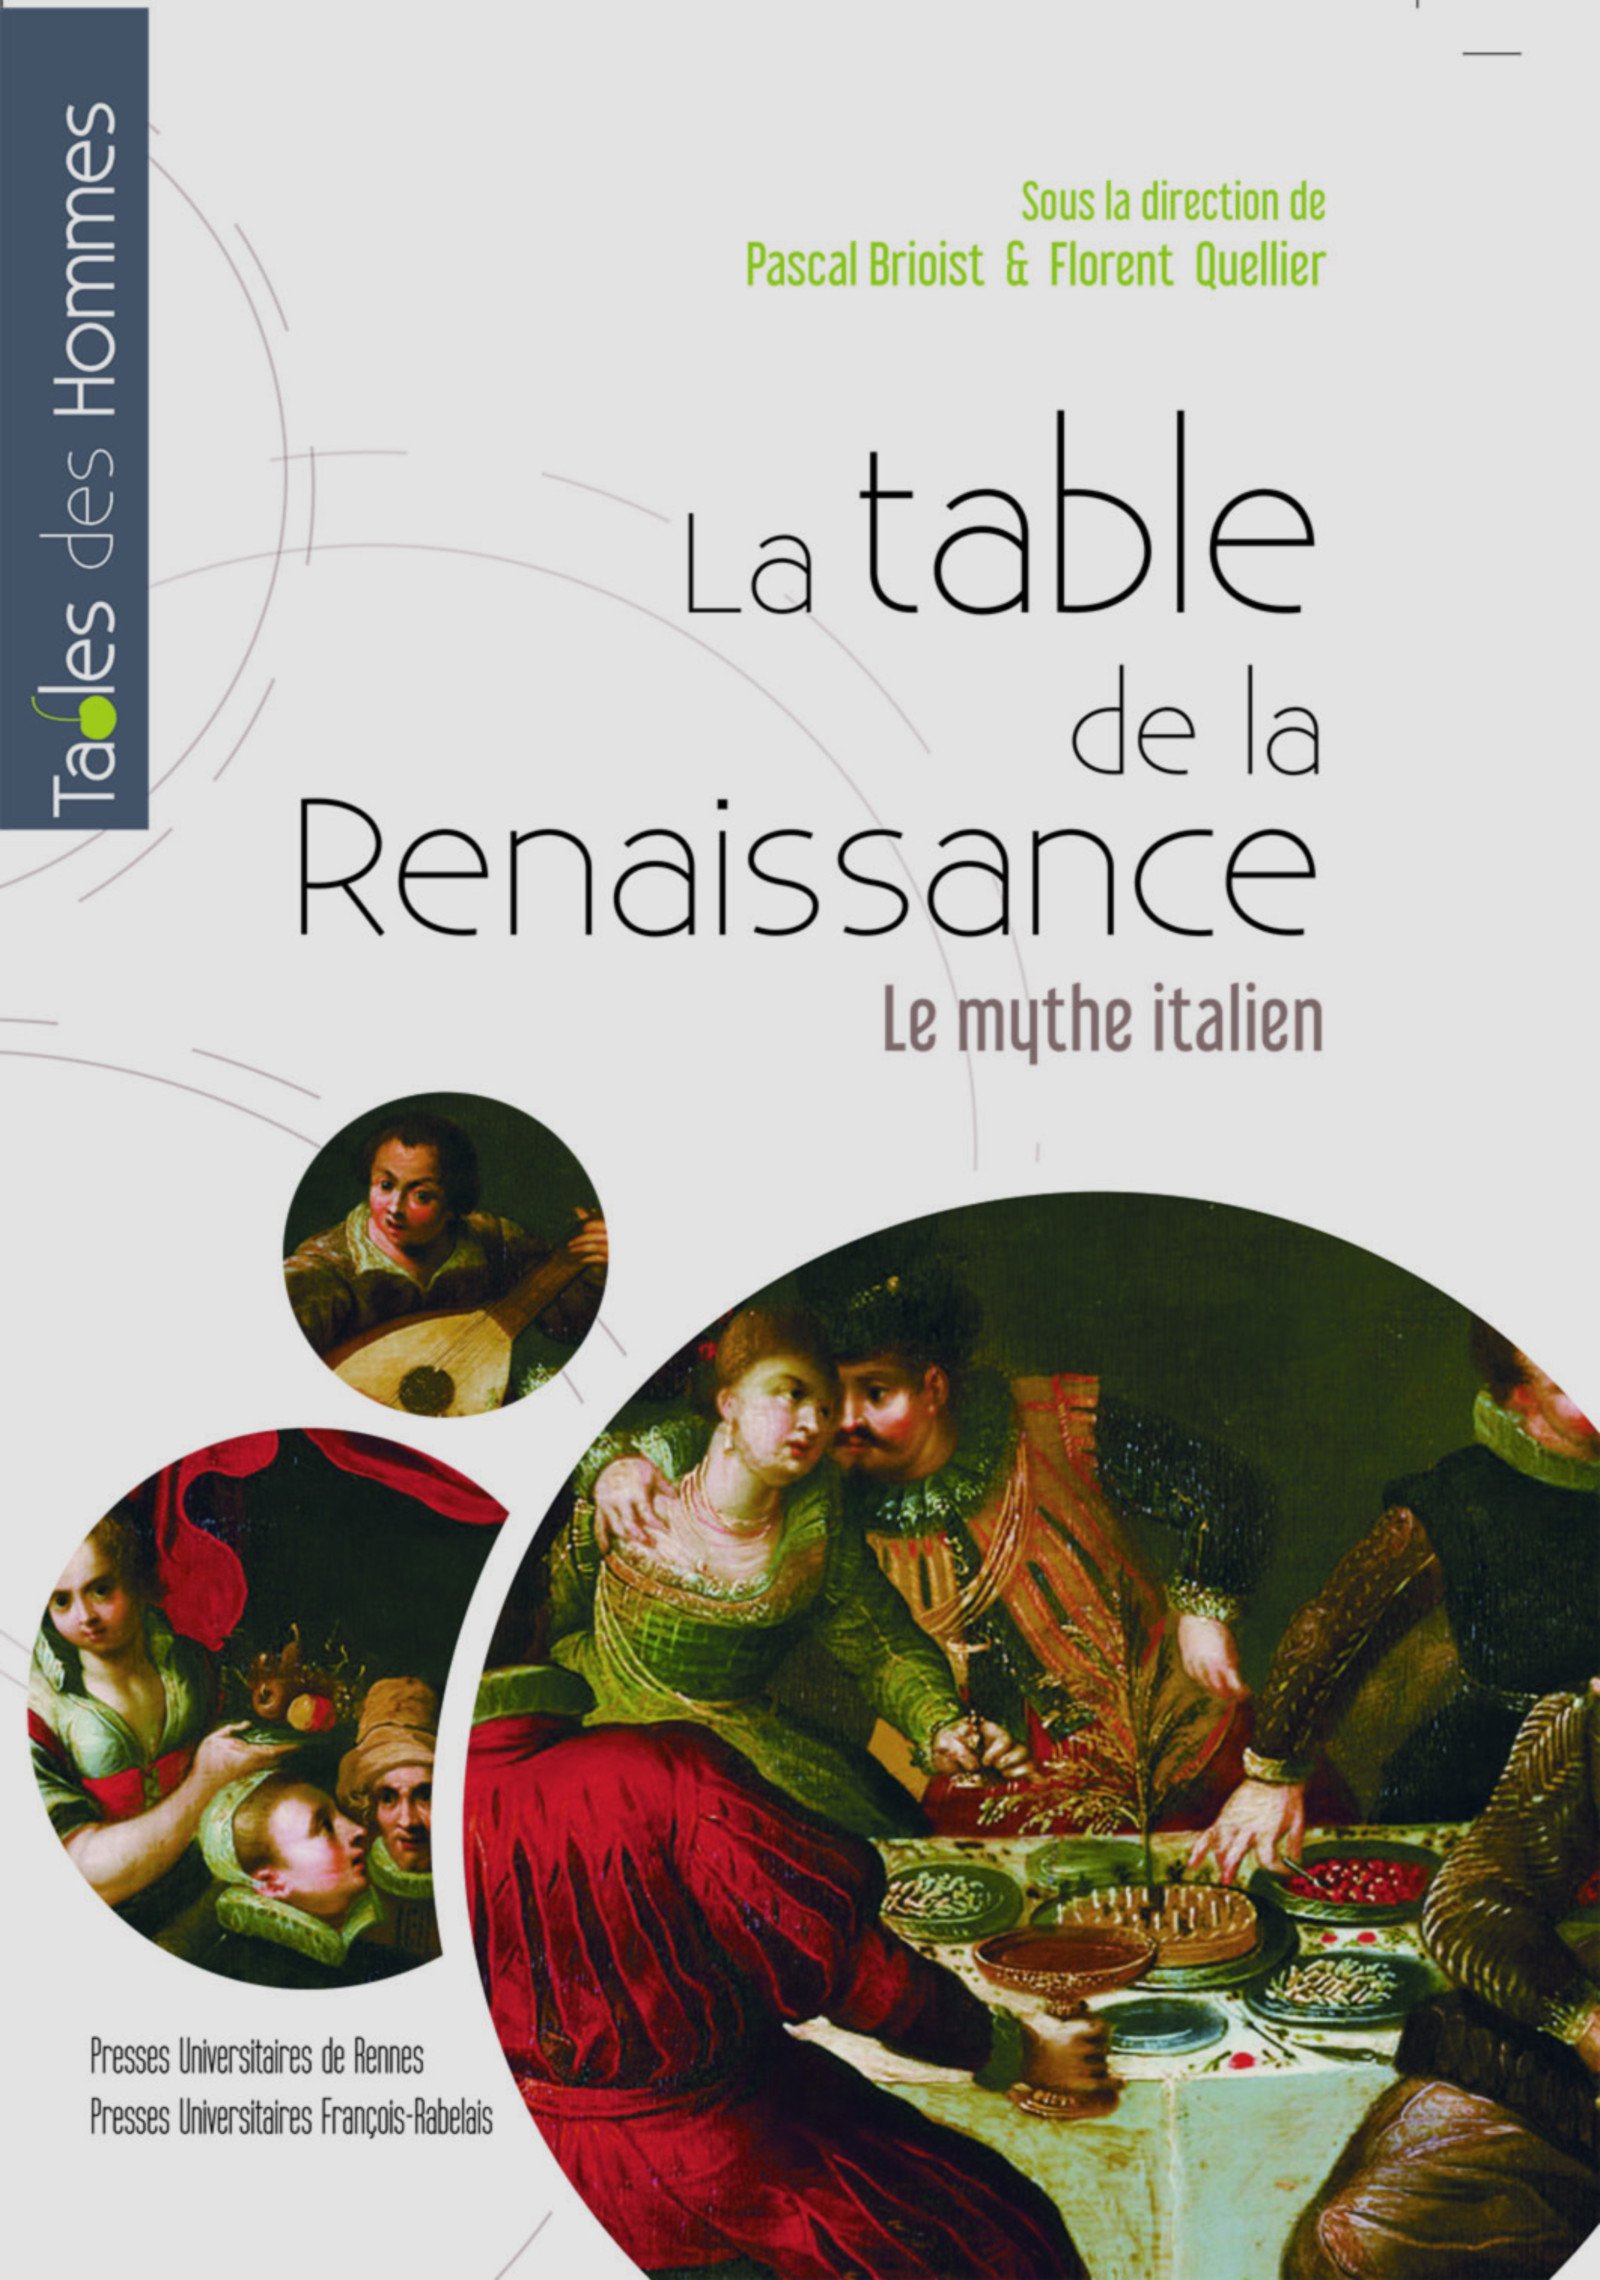 La table de la Renaissance. Le mythe italien, 2018, 264 p.